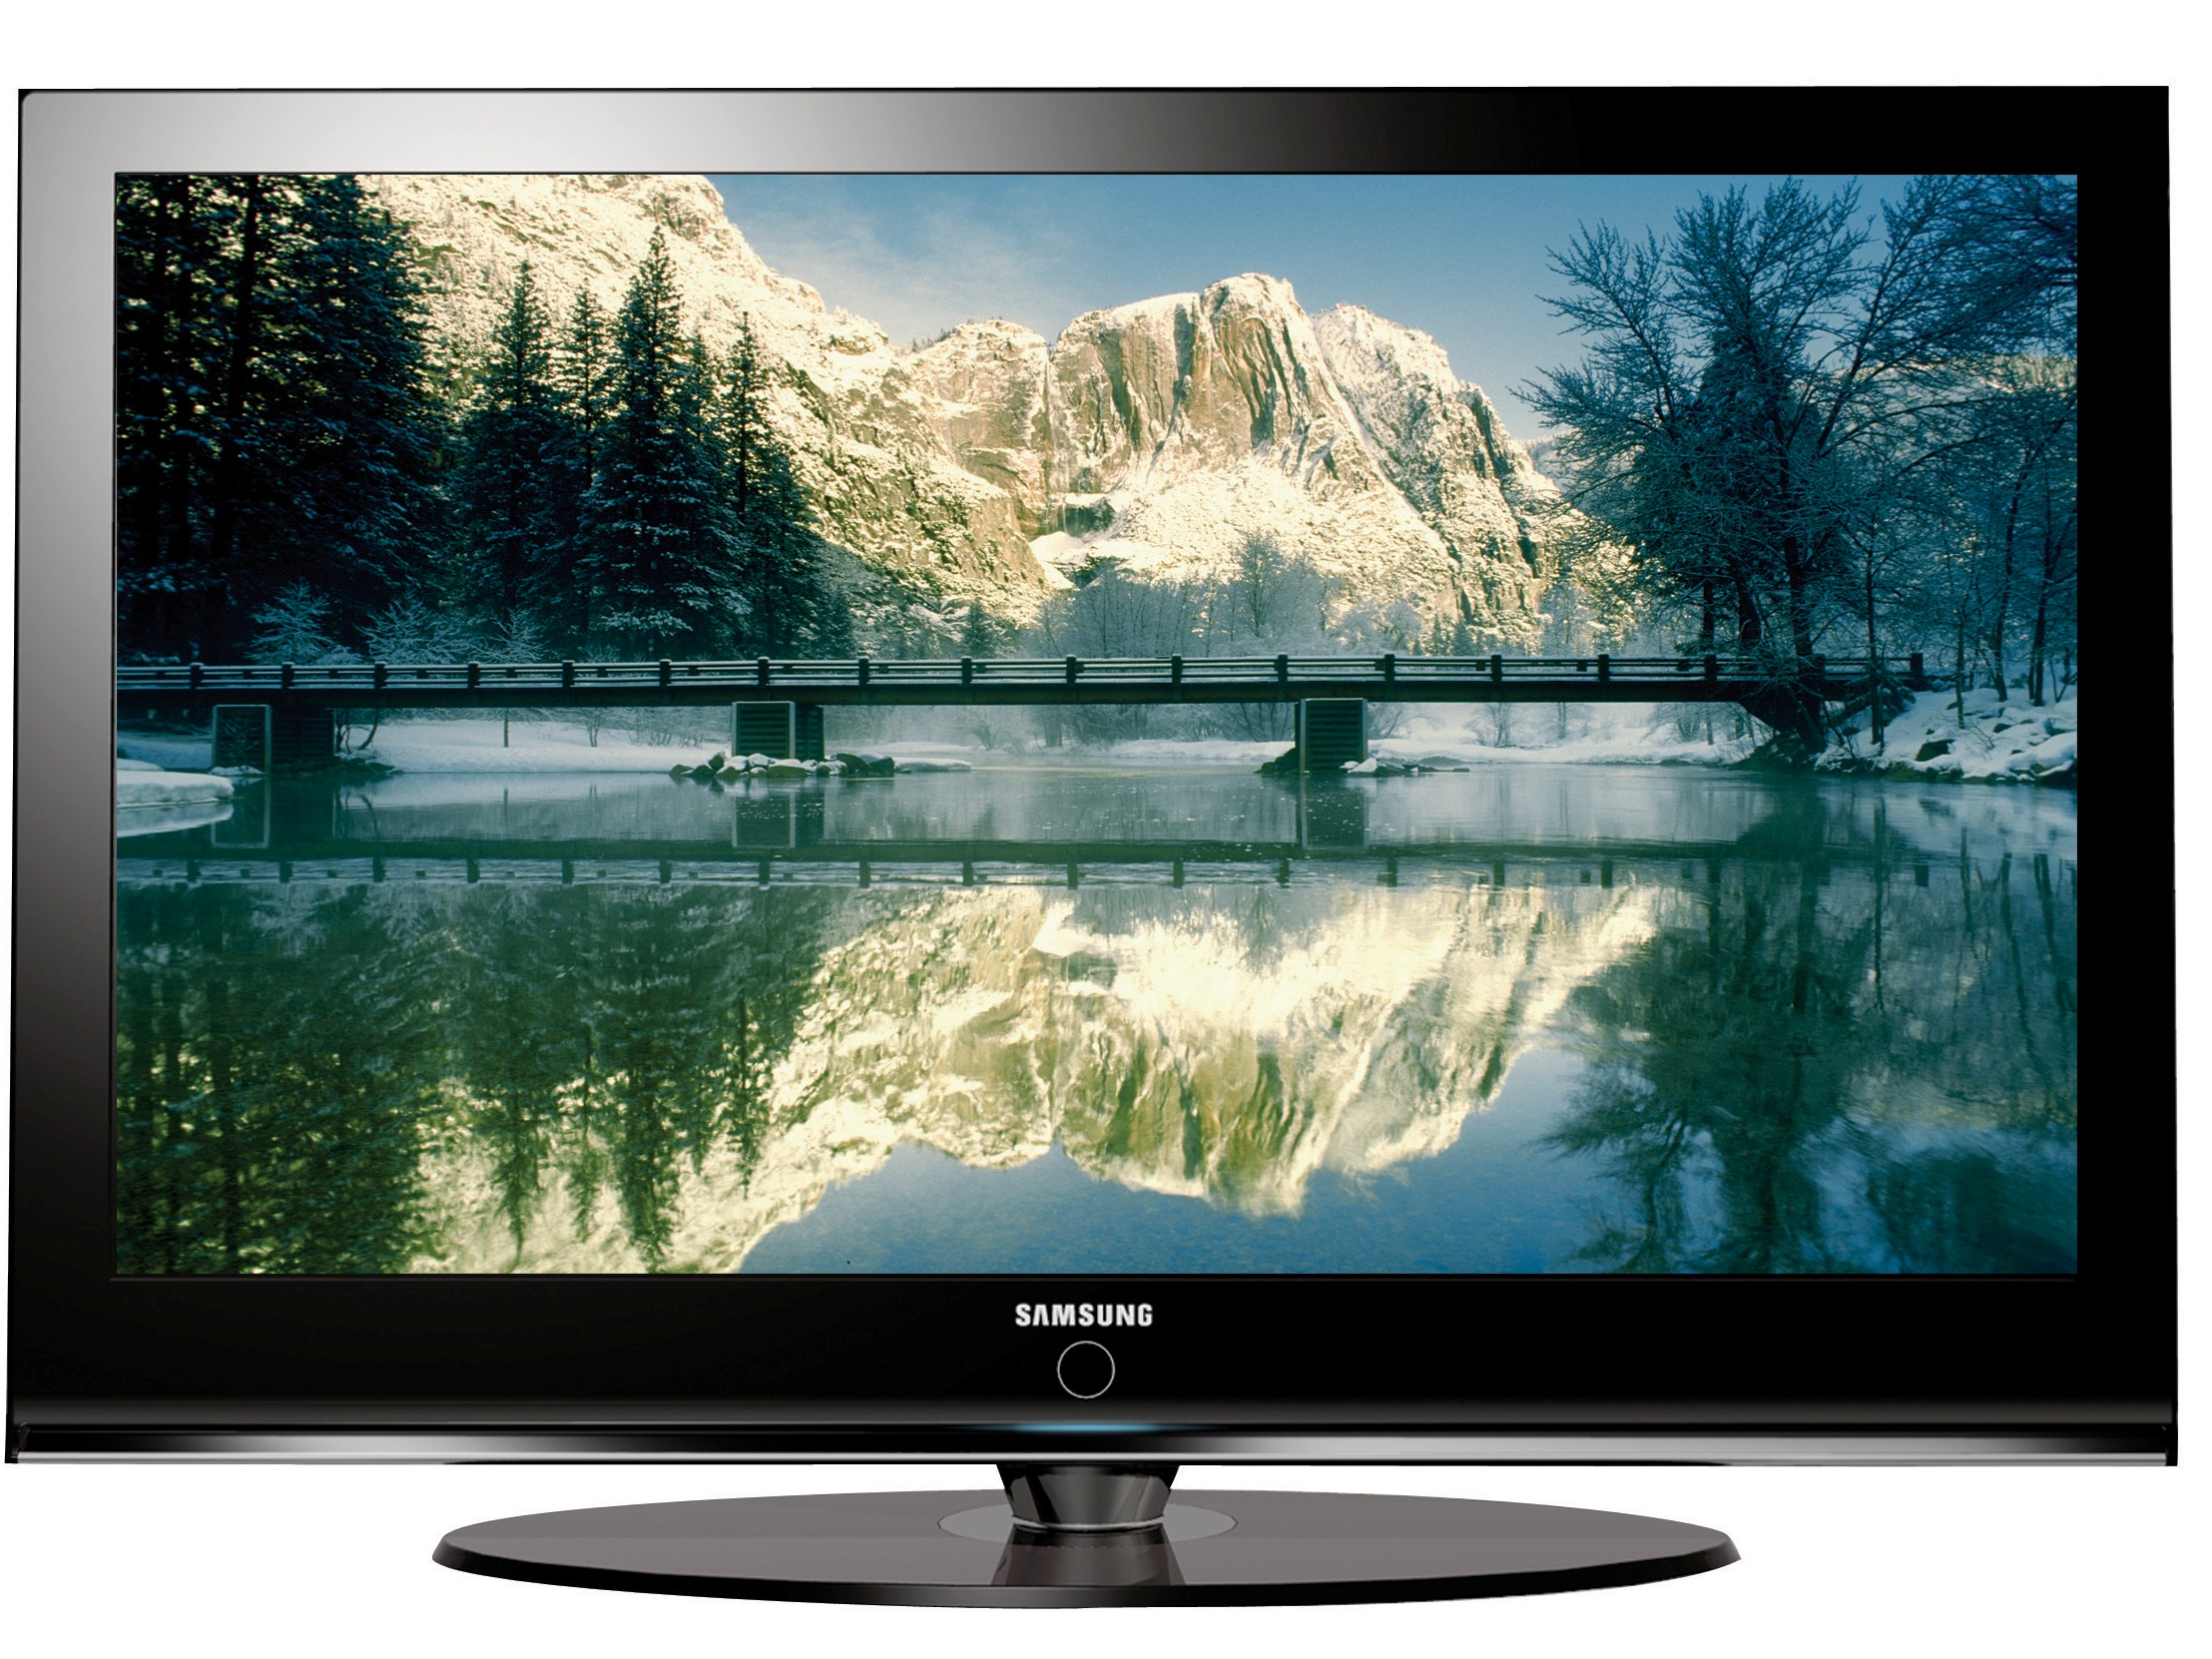 Плазменный жидкокристаллический телевизор. Samsung 2007 телевизор плазма. Телевизор Samsung Ln-t5265f. Телевизор самсунг лсд 2007. Samsung le40.